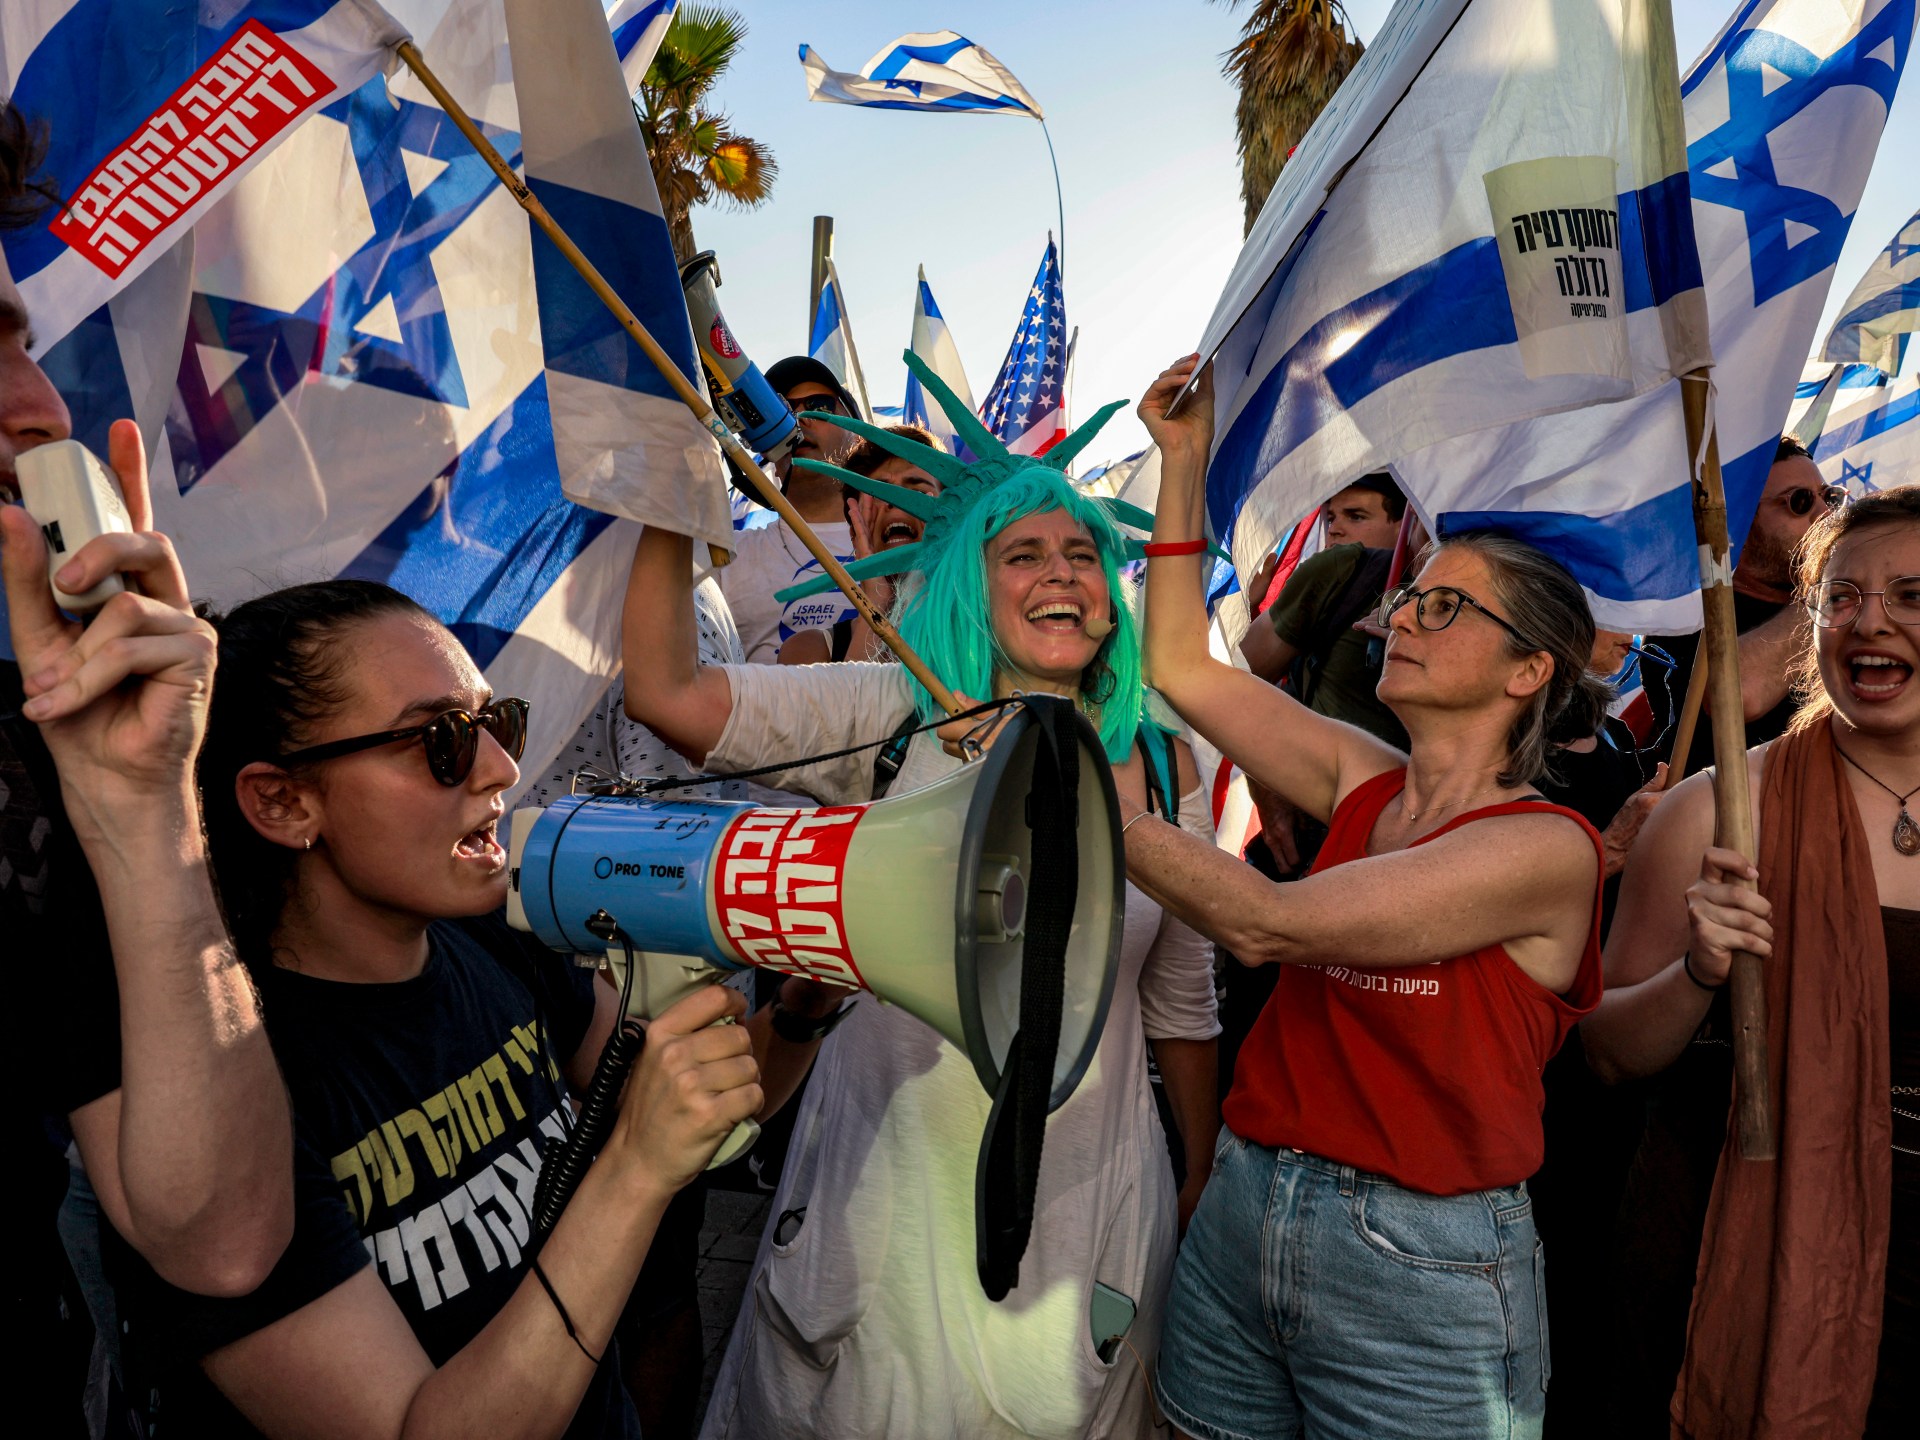 Protes berlanjut di Israel menentang perubahan yudisial yang diusulkan |  Berita Protes